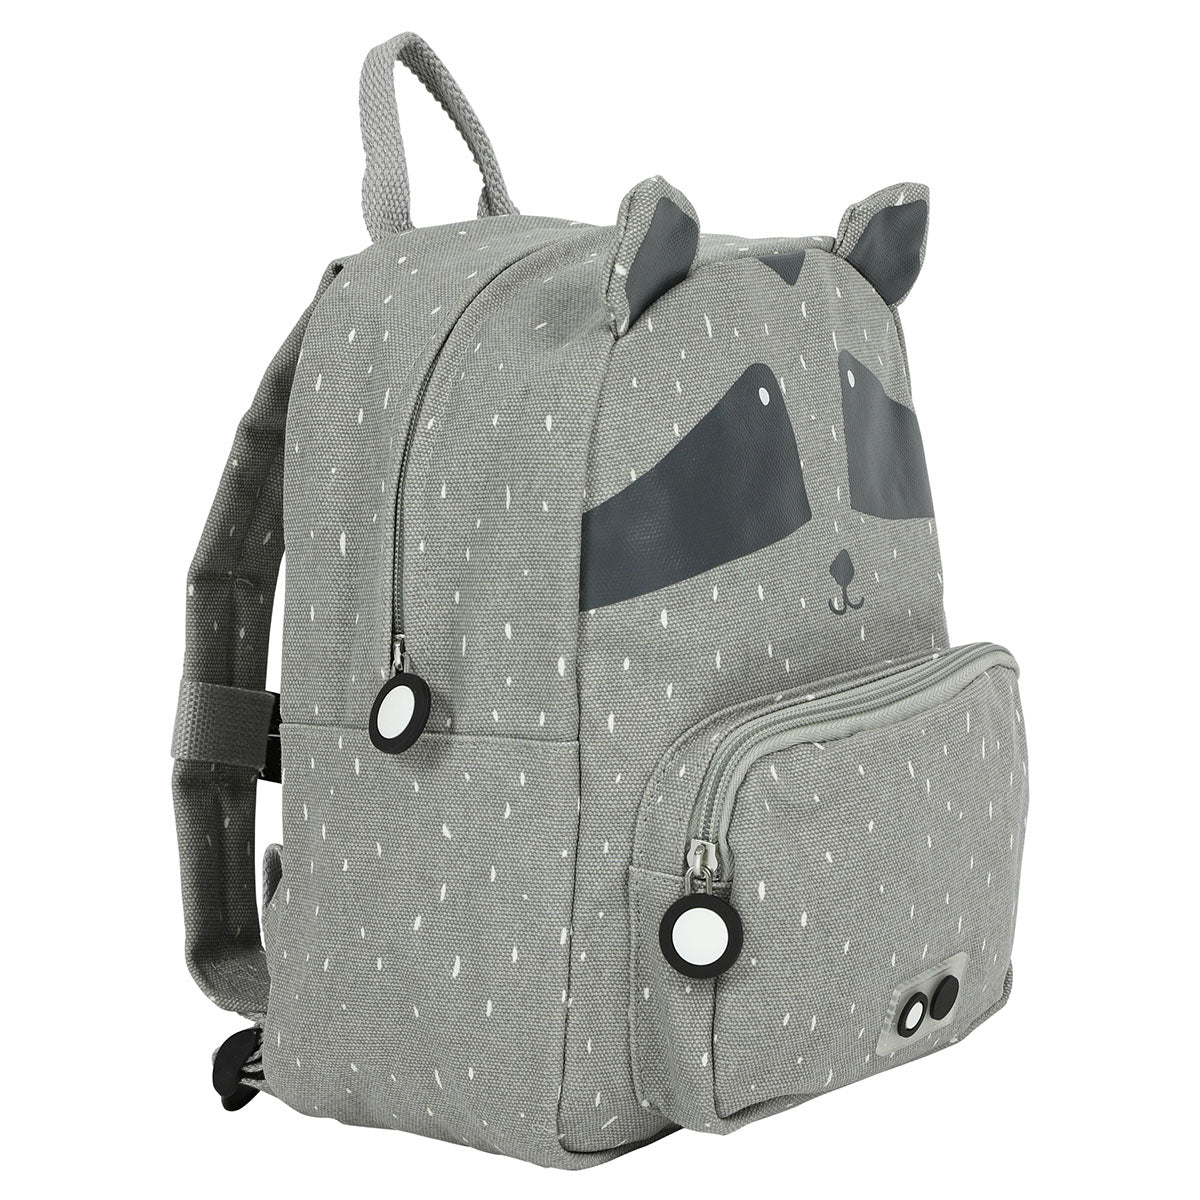 Met de Trixie Mr. Raccoon rugzak ben je klaar voor avontuur! In deze grijze schooltas kan je al je spulletjes kwijt voor een dagje weg. De grijze rugzak komt in de vorm van een leuke wasbeer. VanZus.